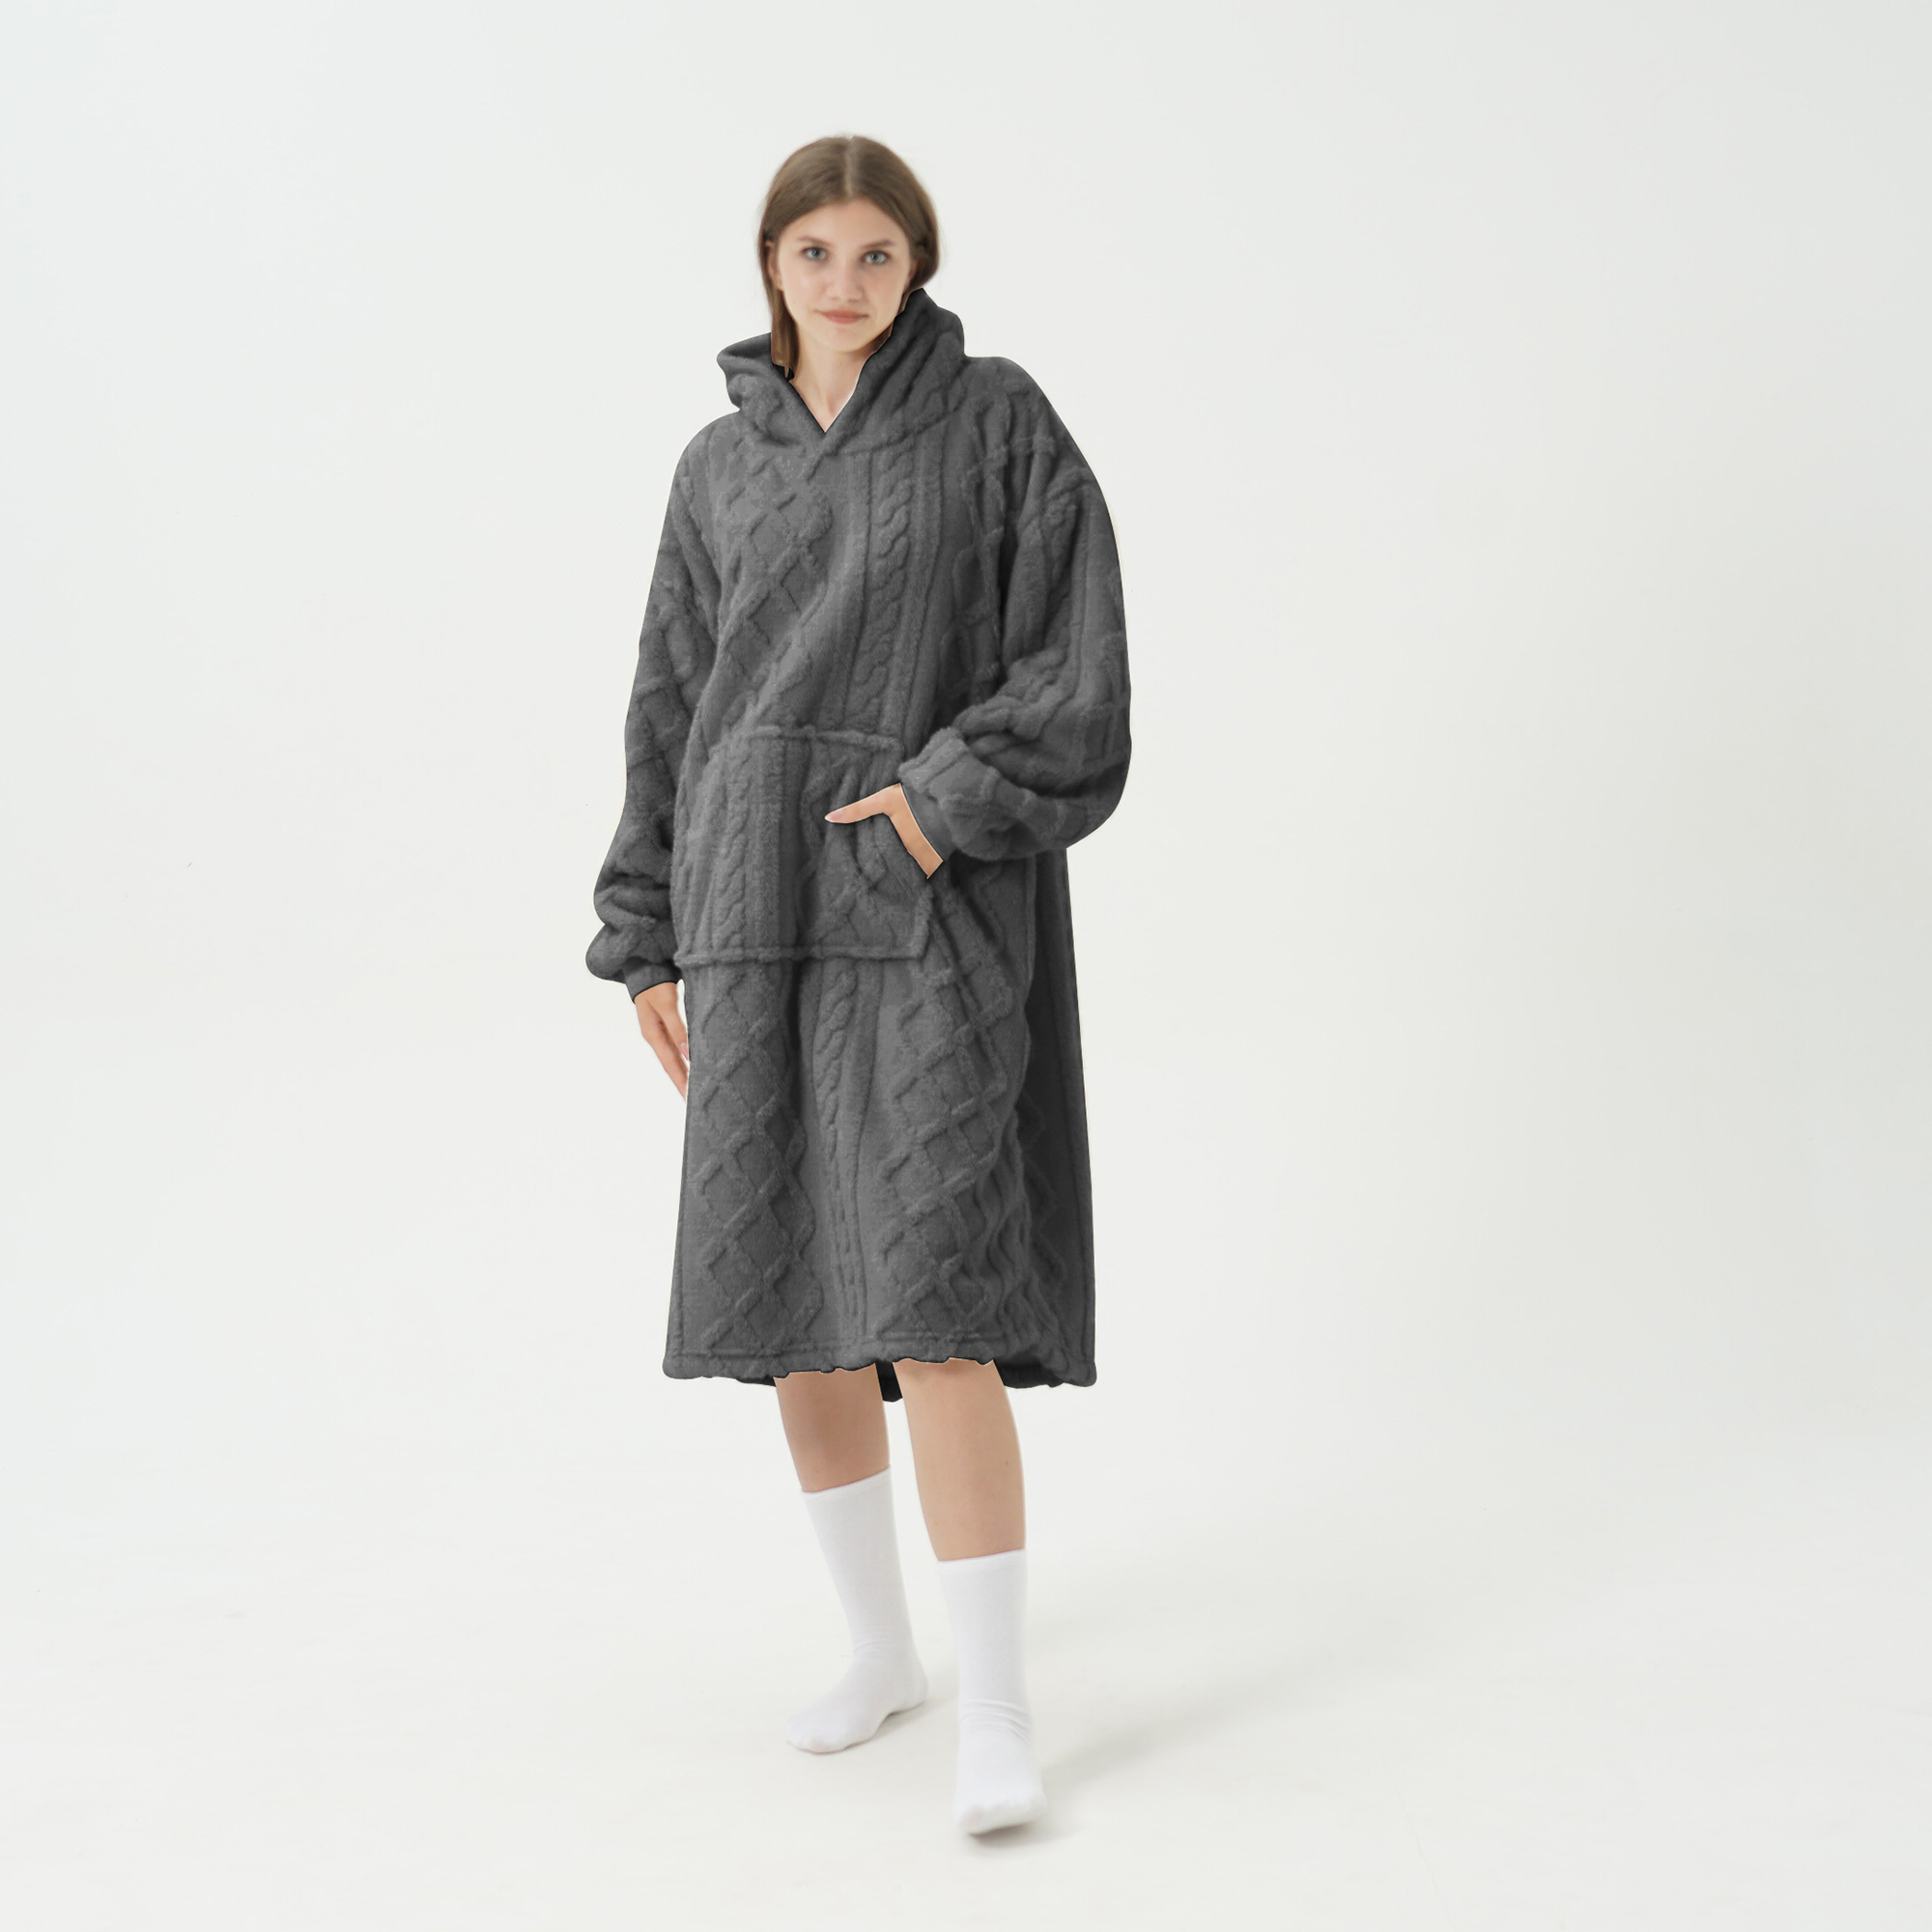 SOPHIE Oversized Hoodie - 70x110 cm - Hoodie & deken in één - extra grote kabeltrui met capuchon - Charcoal Gray - antraciet